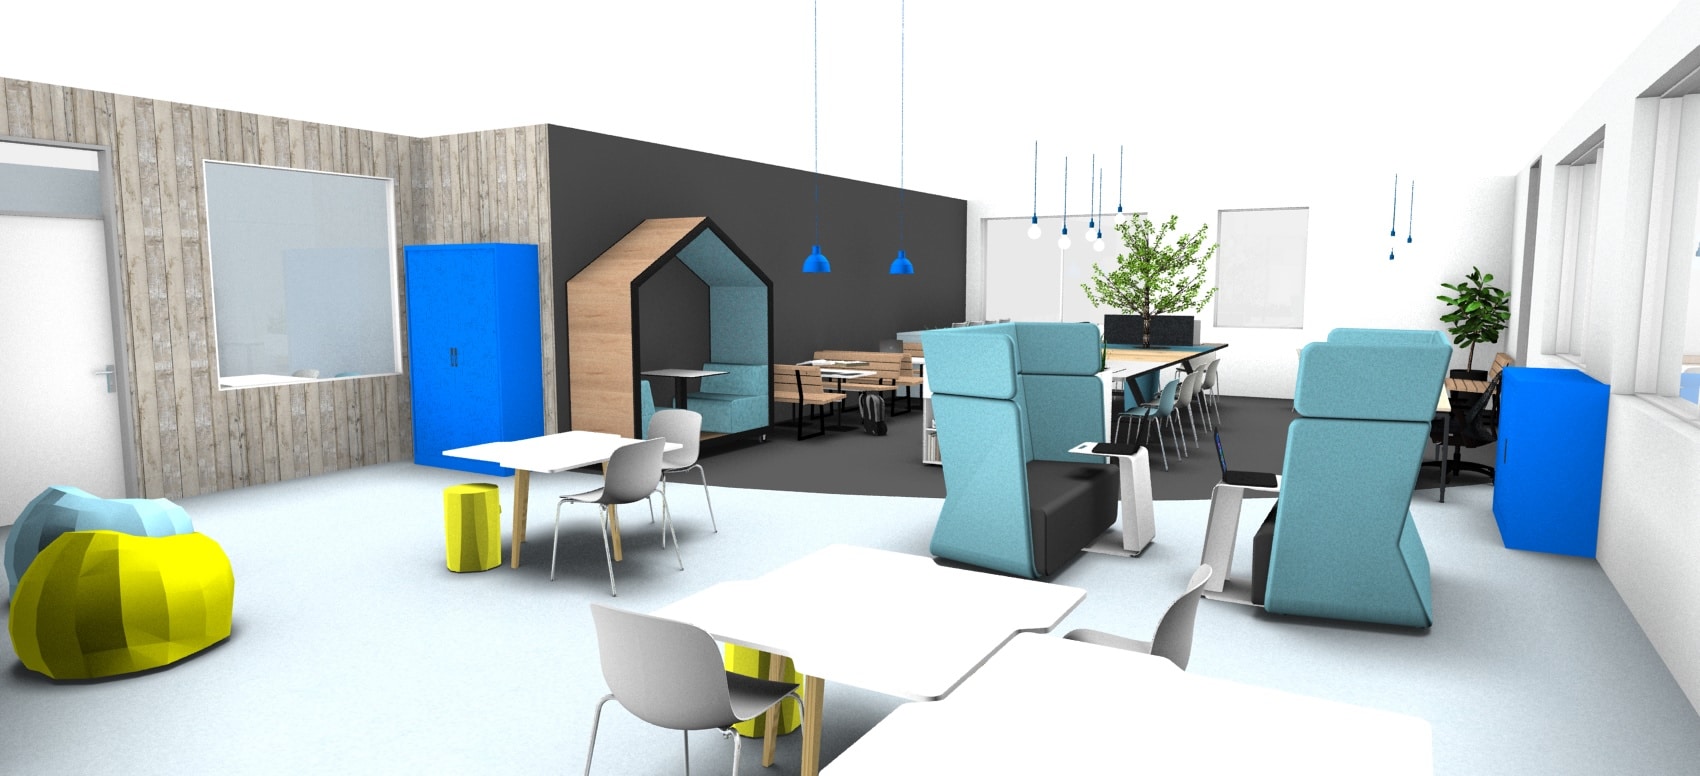 WDZ-College-Hardinxveld-2020-definitieve-ontwerp-3